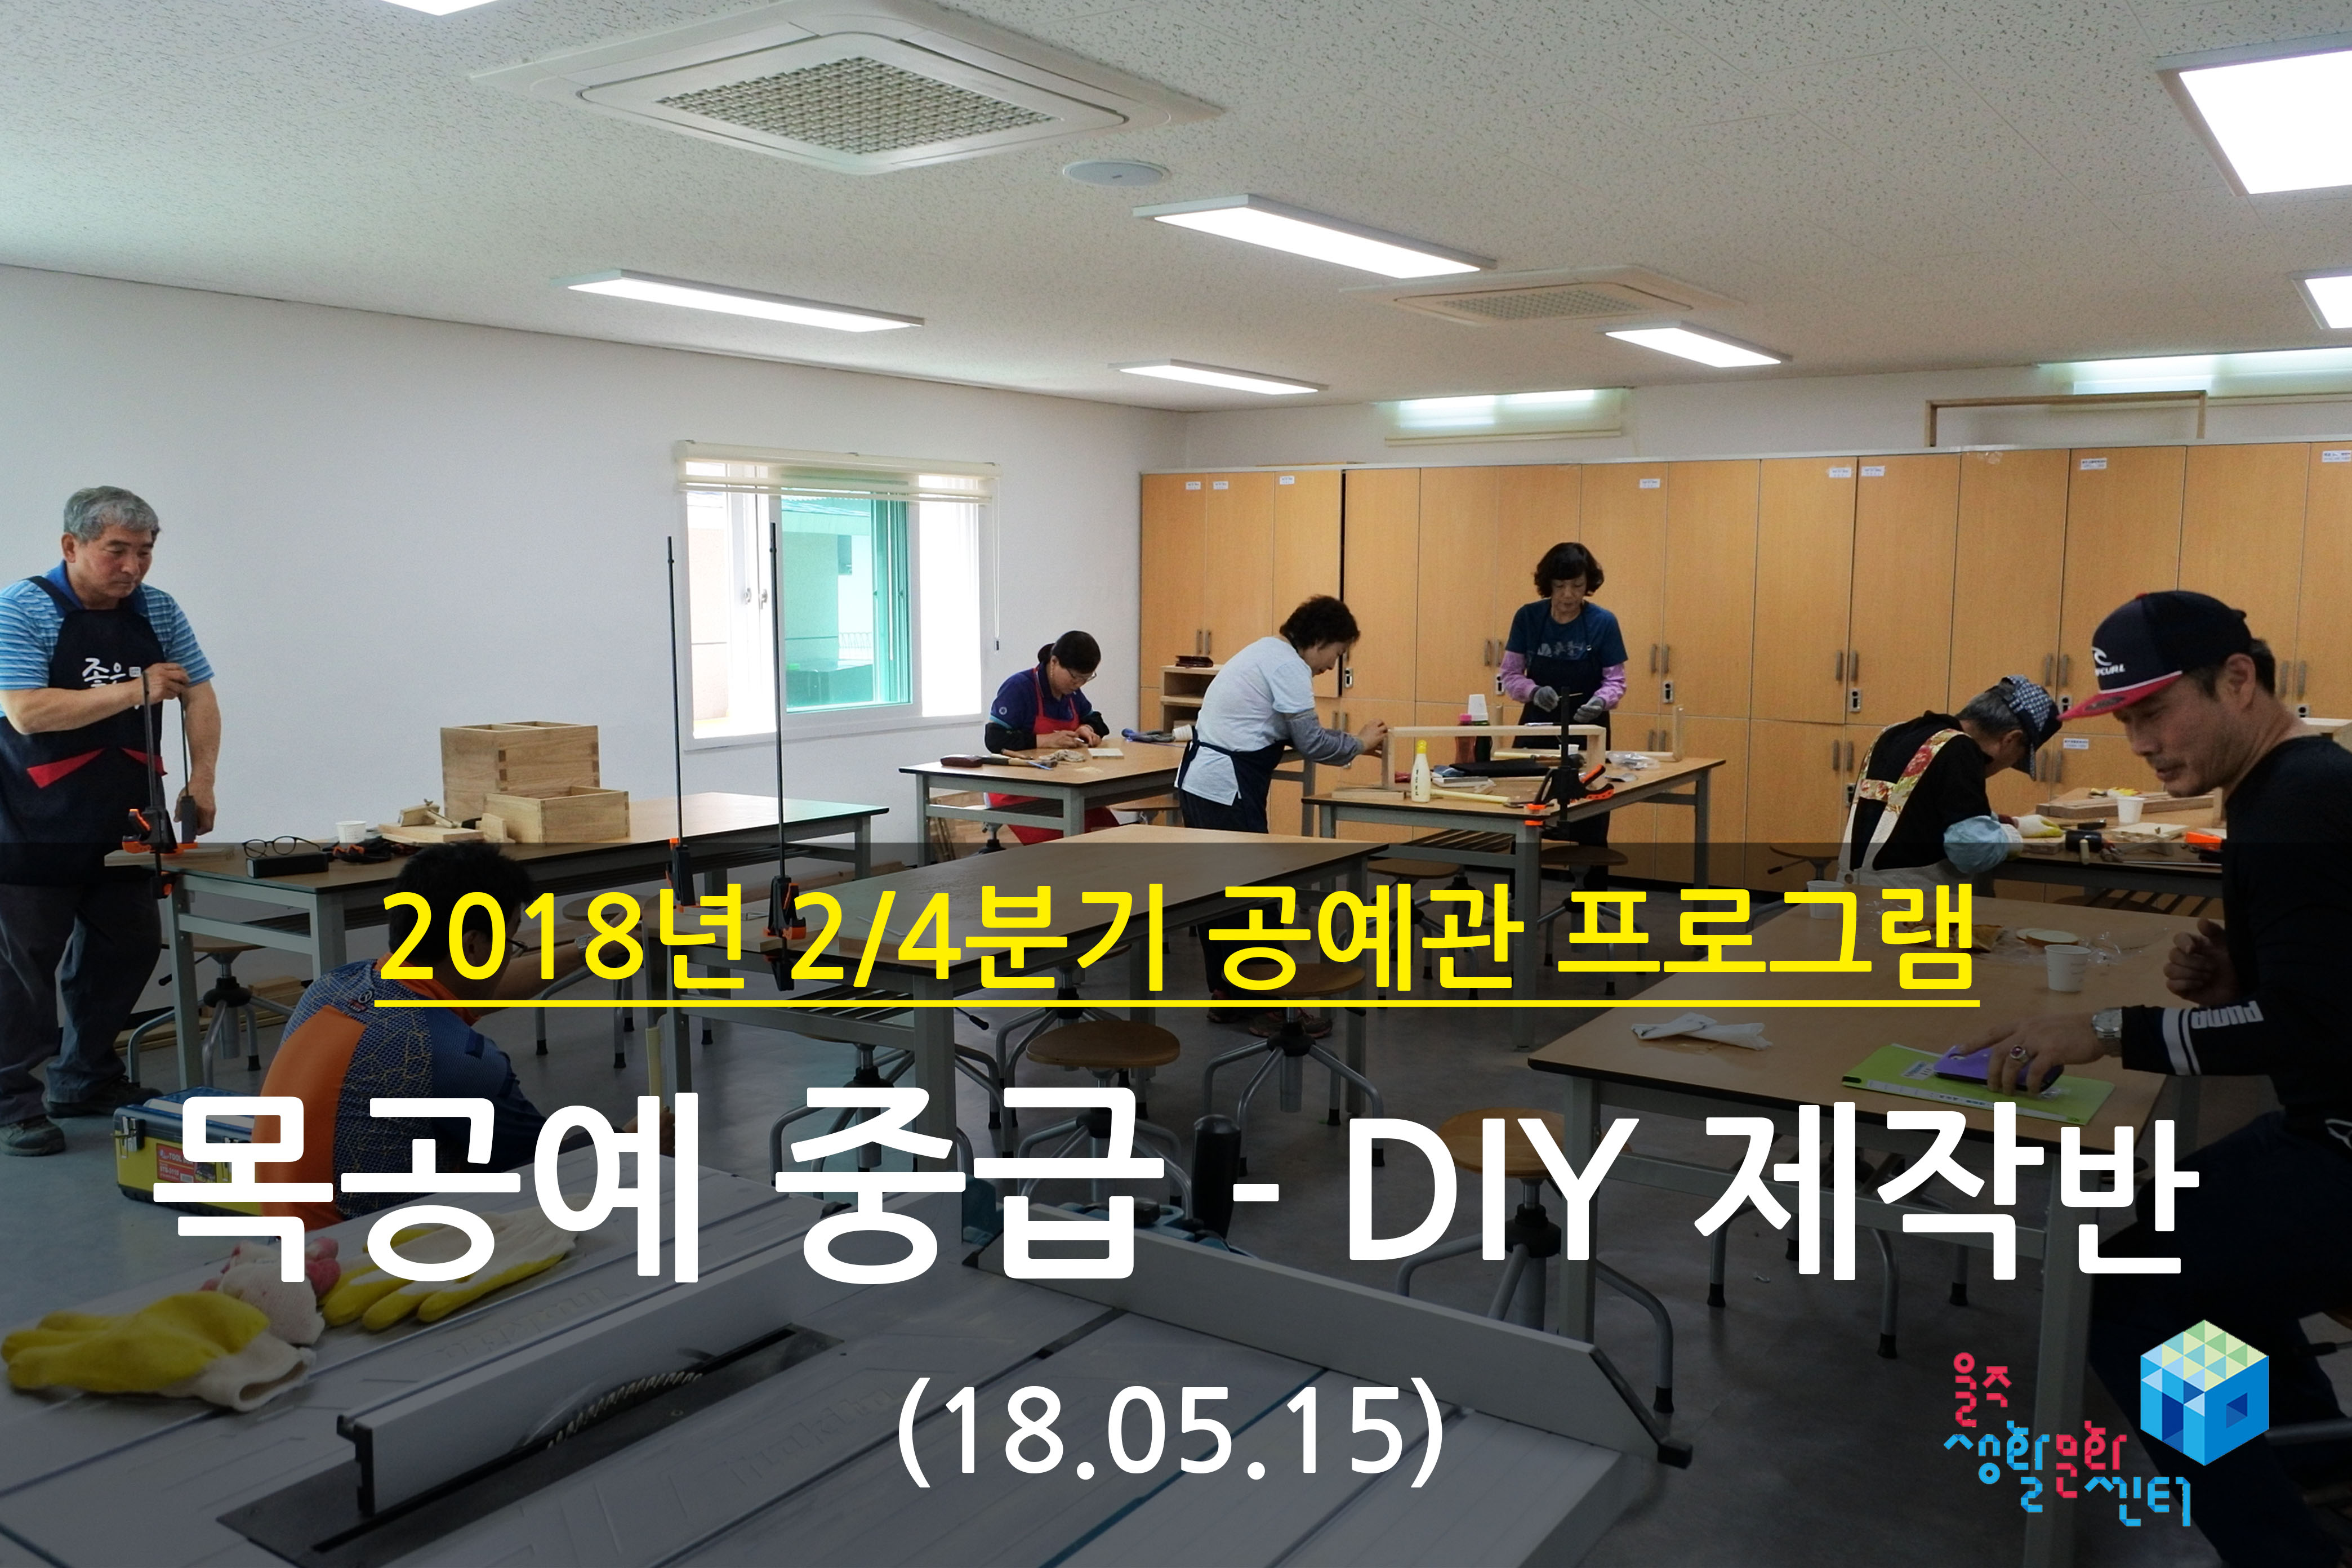 2018.05.15 _ 목공예 중급 - DIY 제작반 _ 2/4분기 7주차 수업